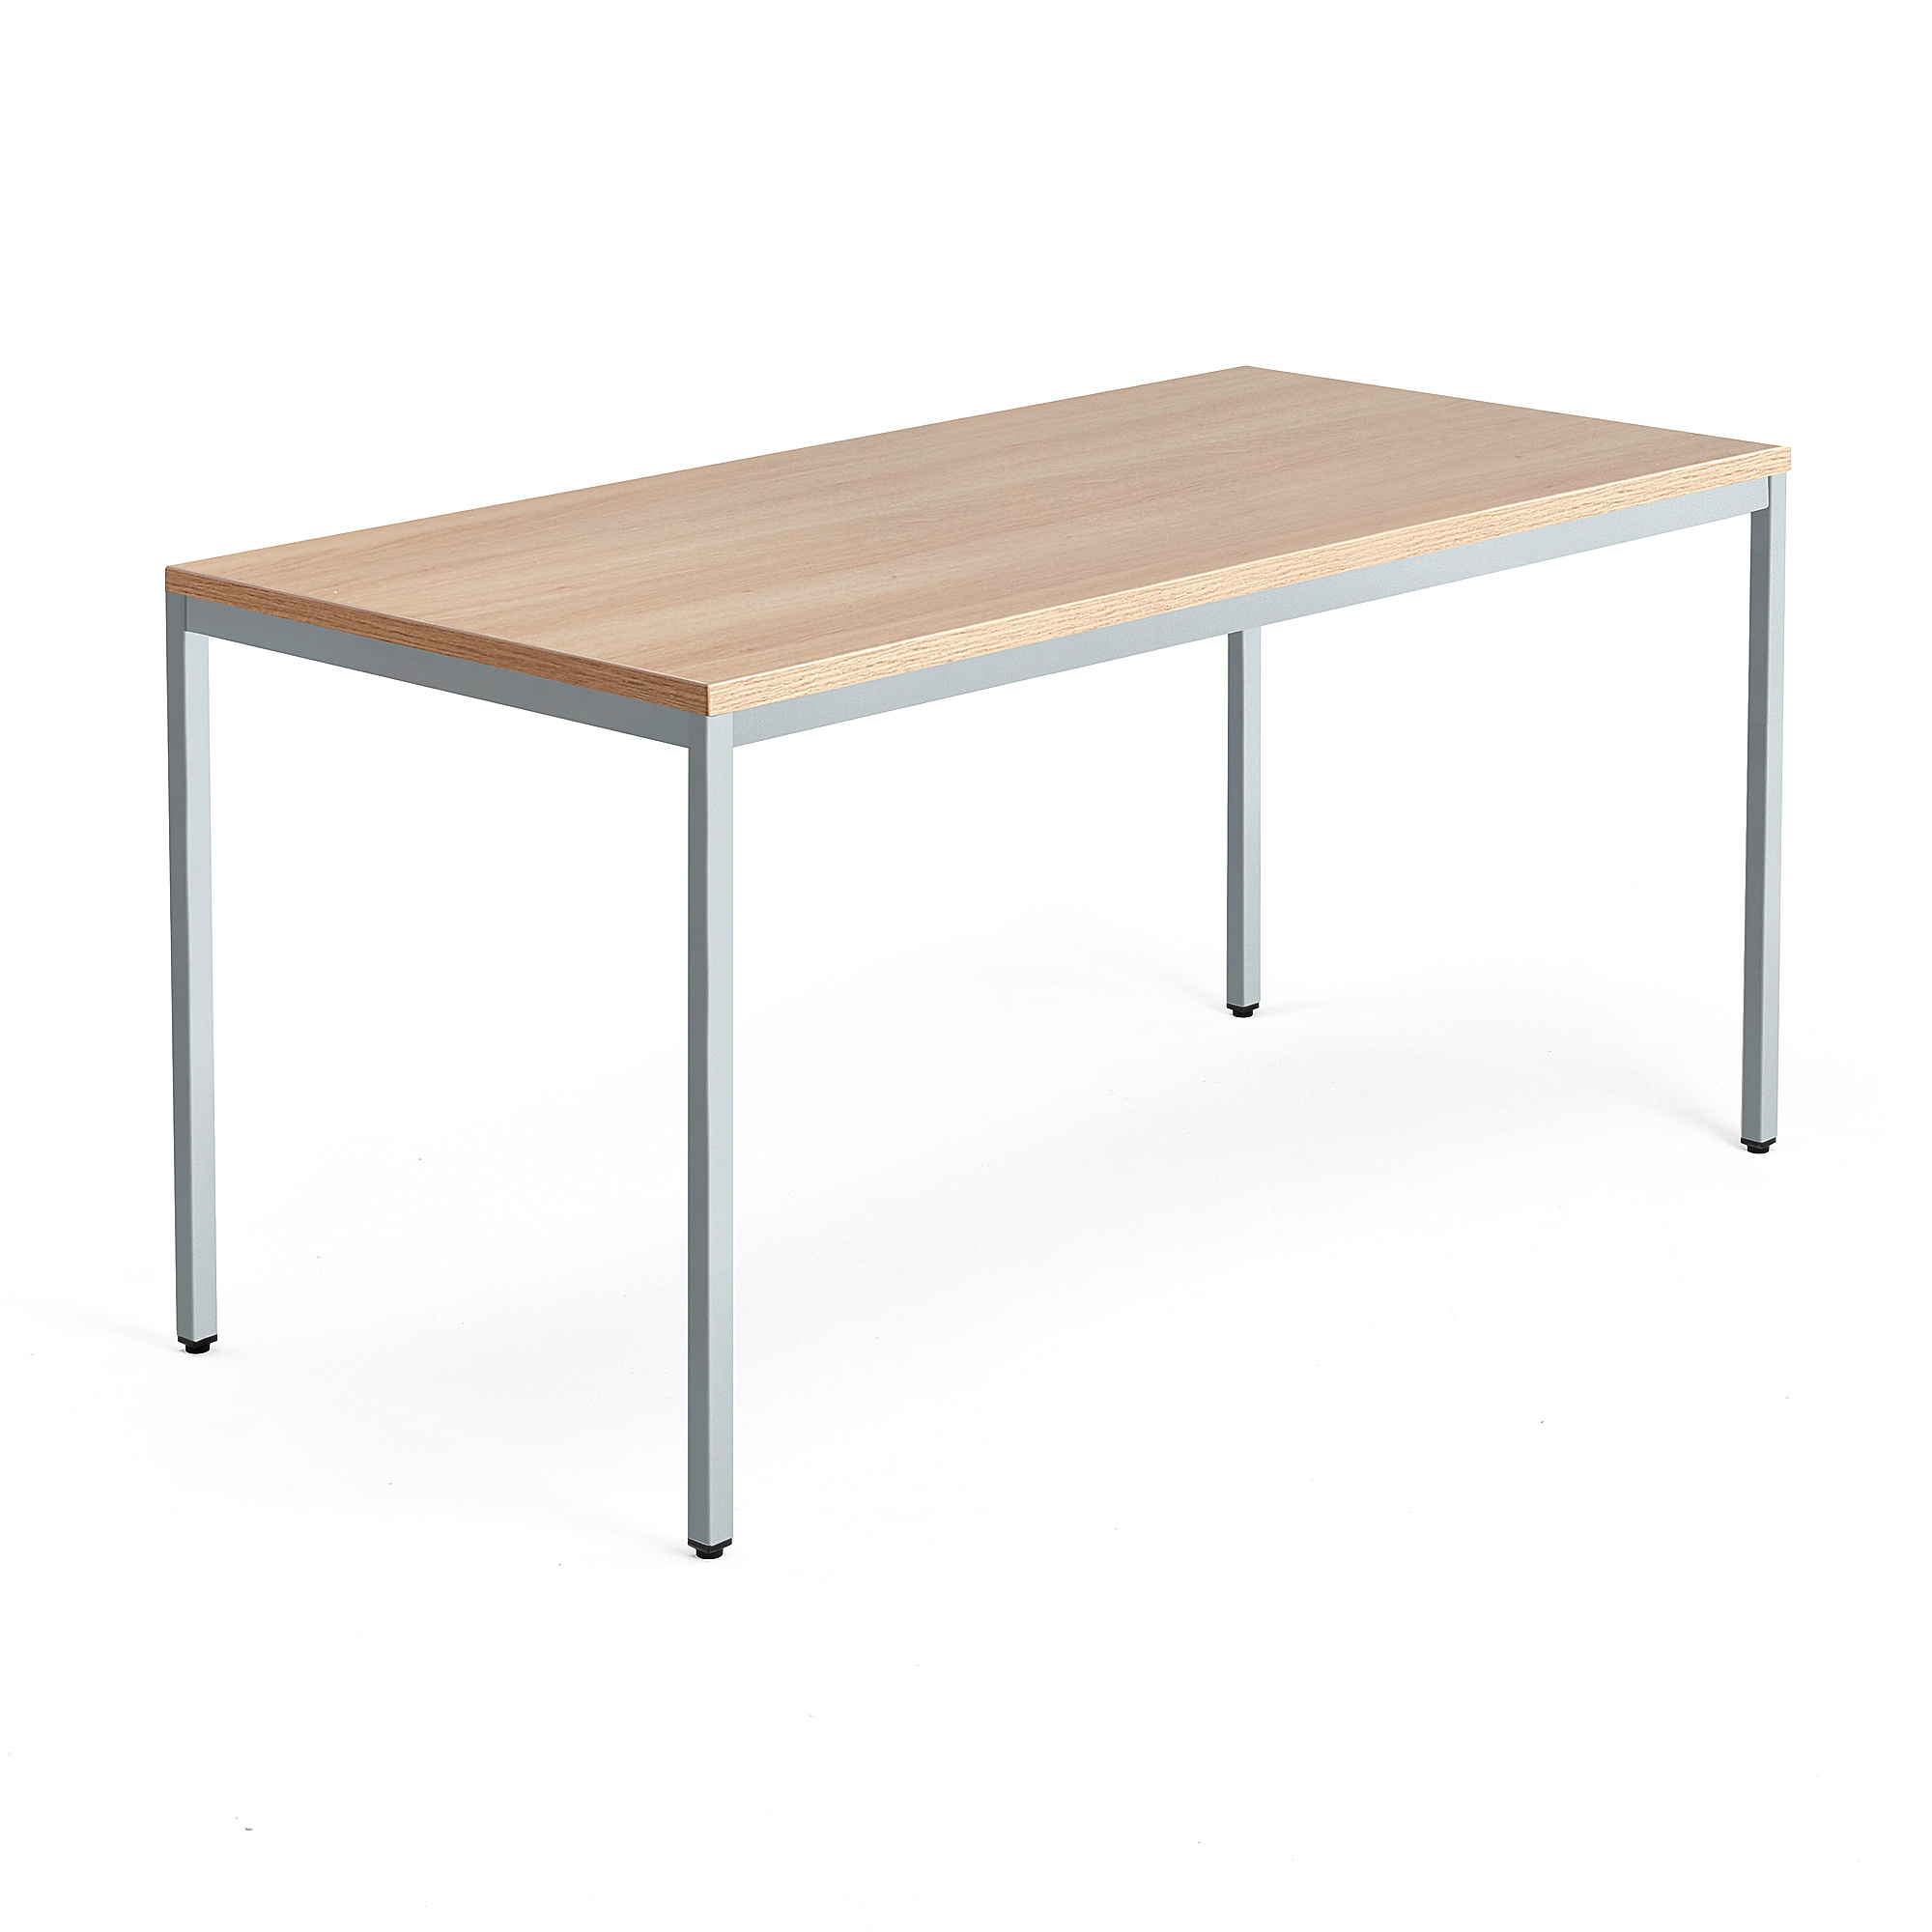 Psací stůl QBUS, 4 nohy, 1600x800 mm, stříbrný rám, dub